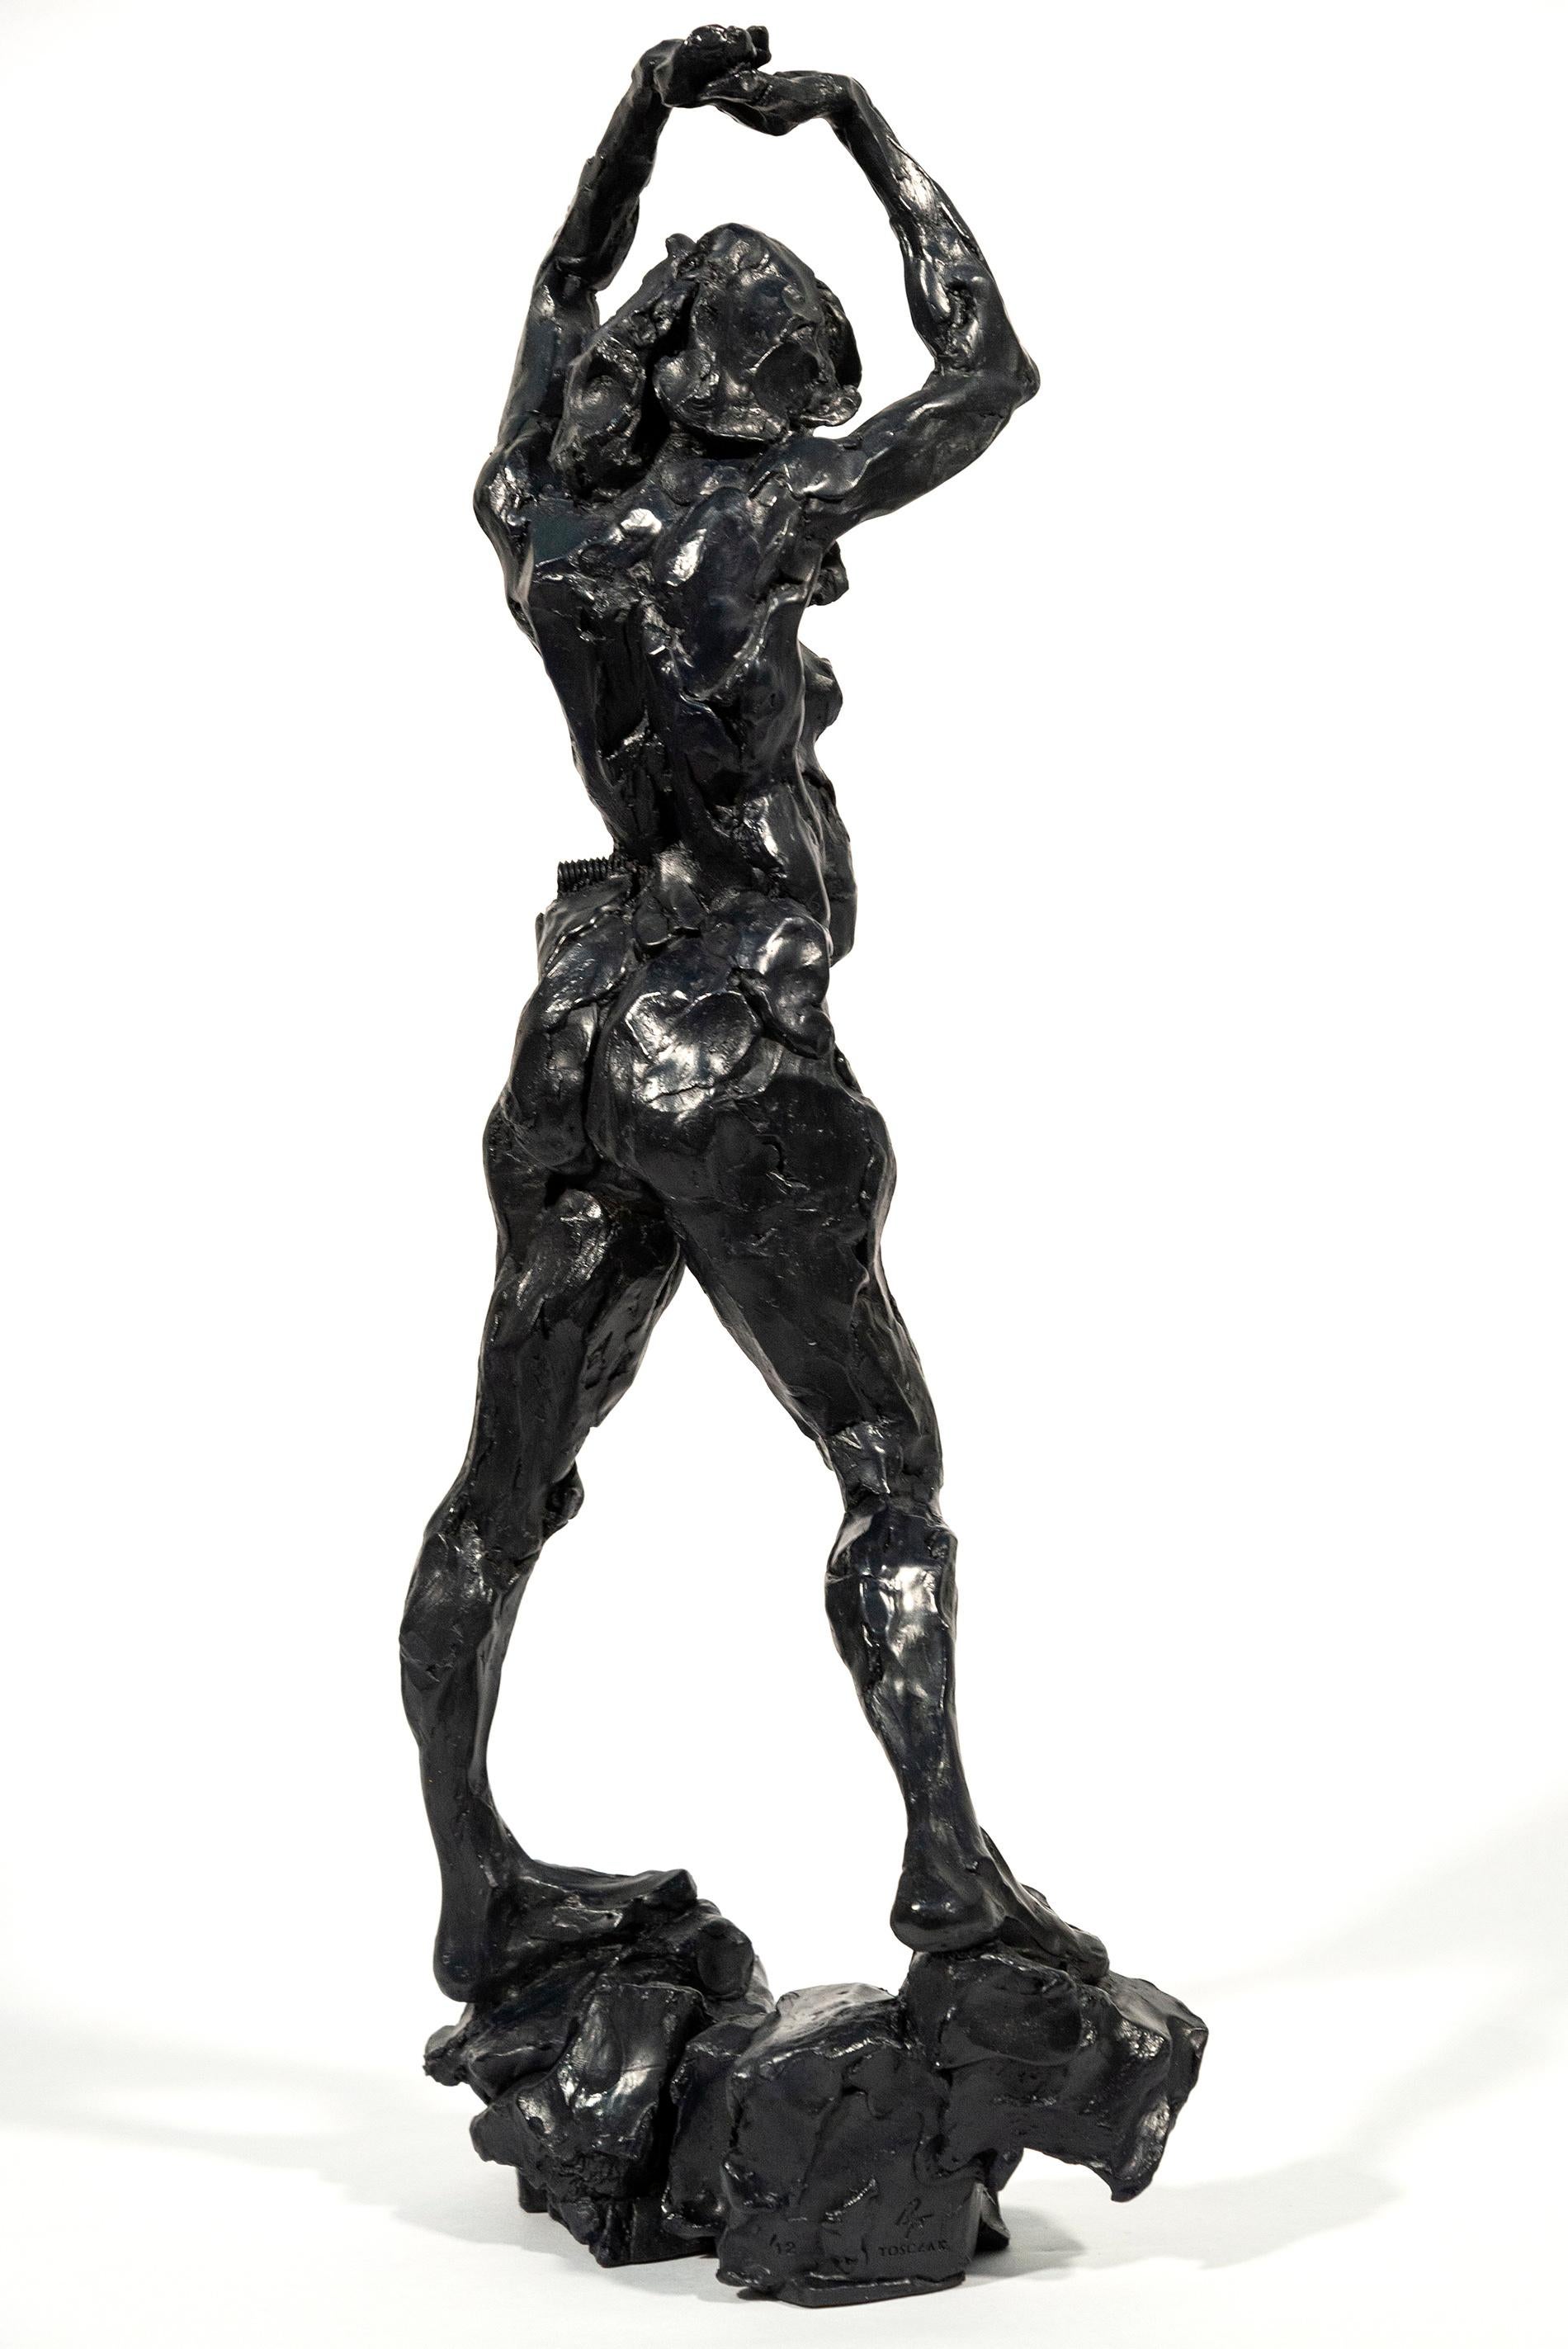 L'artiste canadien Richard Tosczak capture la beauté et l'élégance de la forme humaine dans ses sculptures. Cette pièce représente une femme nue dans une pose forte, les bras levés au-dessus de la tête. Coulée magistralement en bronze, dans une